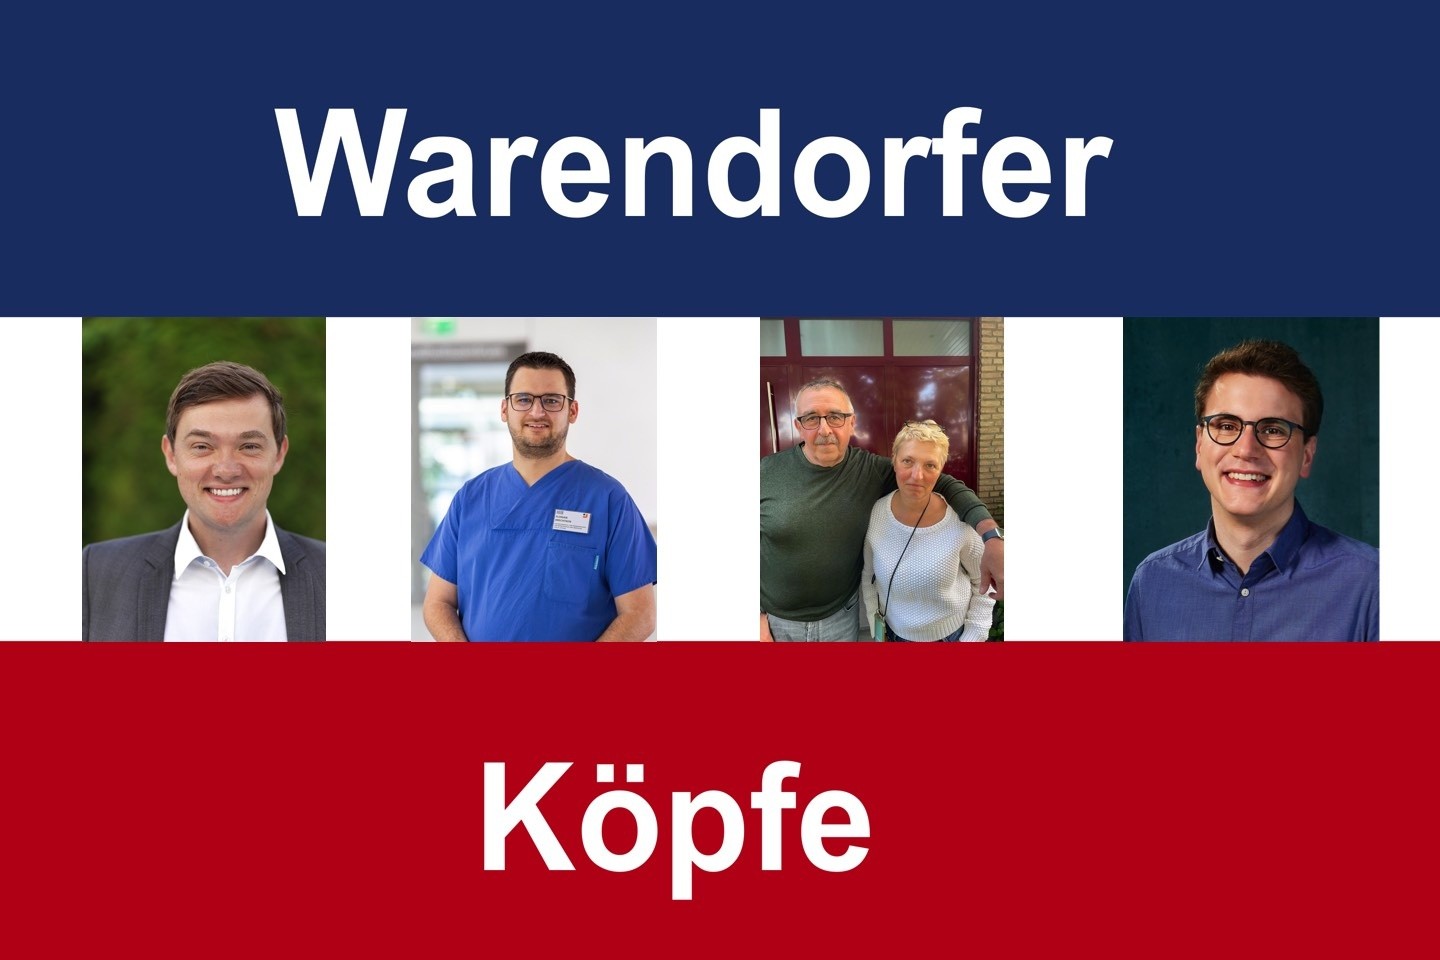 Warendorfer Köpfe, Gerd Leve, Christoph Hess, Warendorf, Rainer Tasche, Johannes Austermann, Florian Brechtken, Peter Horstmann, Warendorf talk,